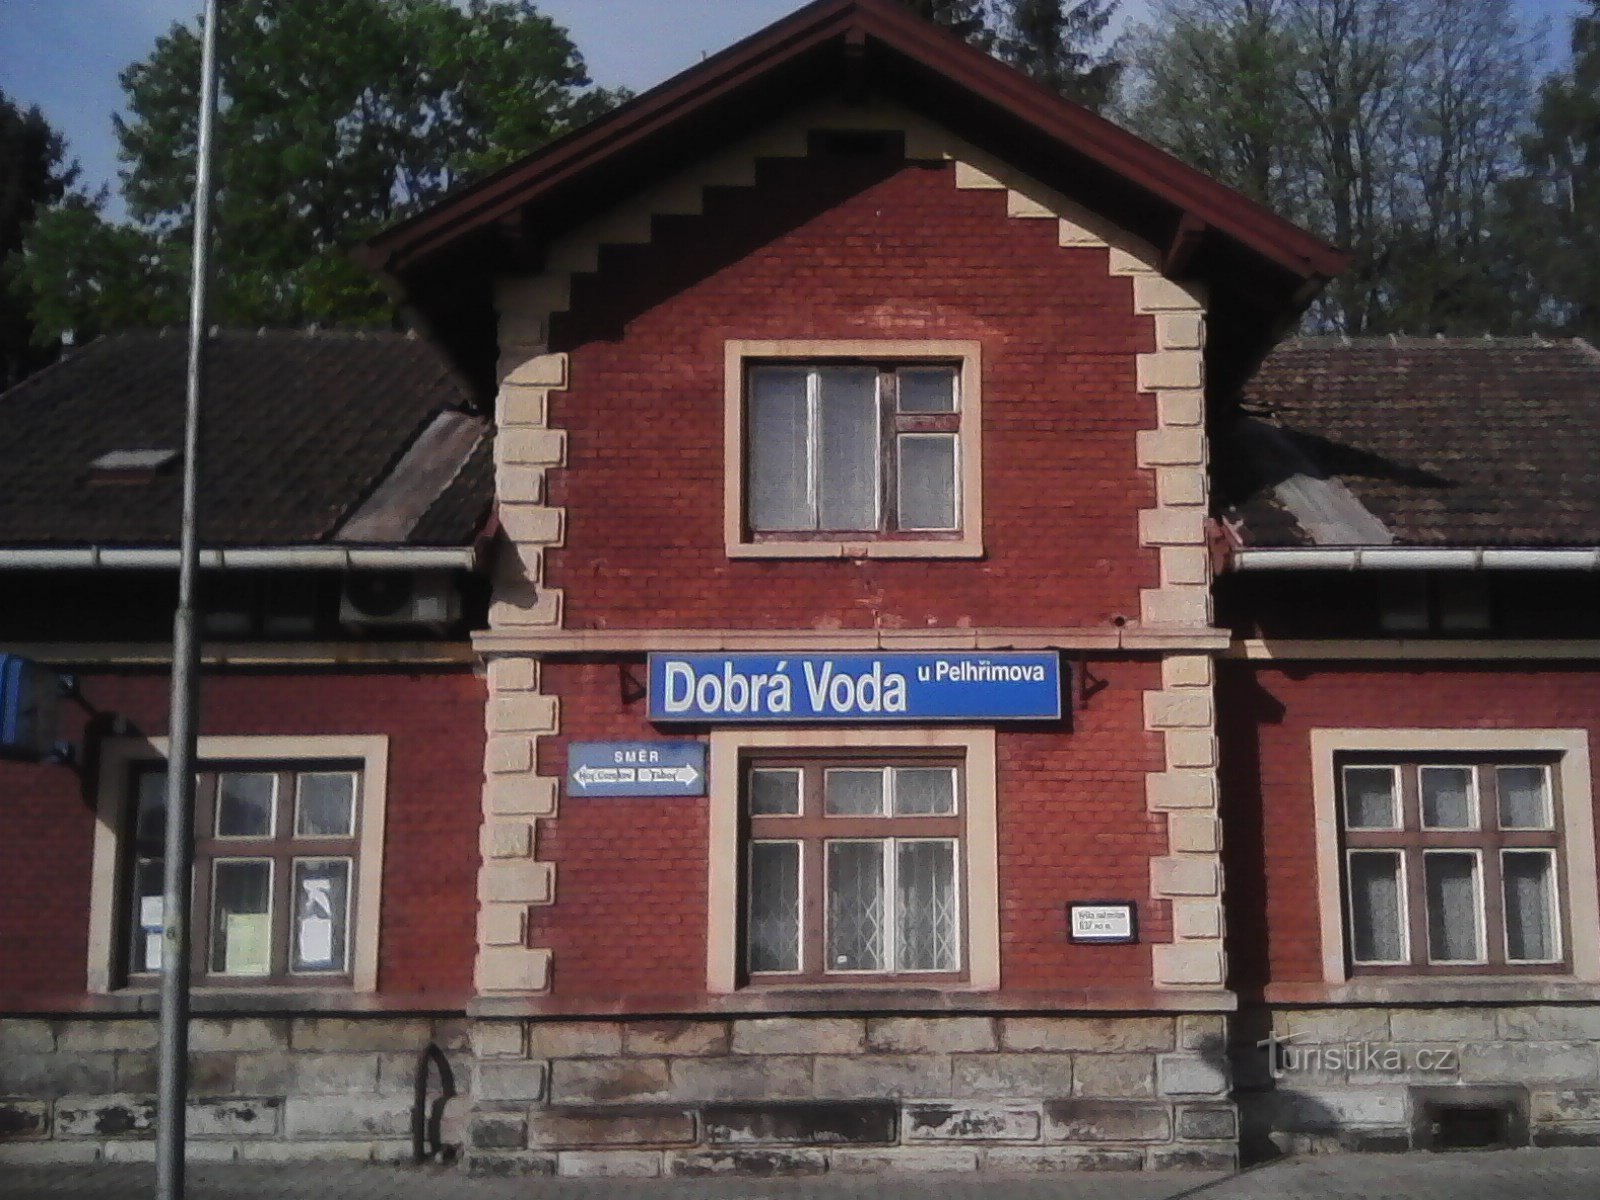 1. Station i Dobrá Voda - utgångspunkten för pilgrimsfärden.